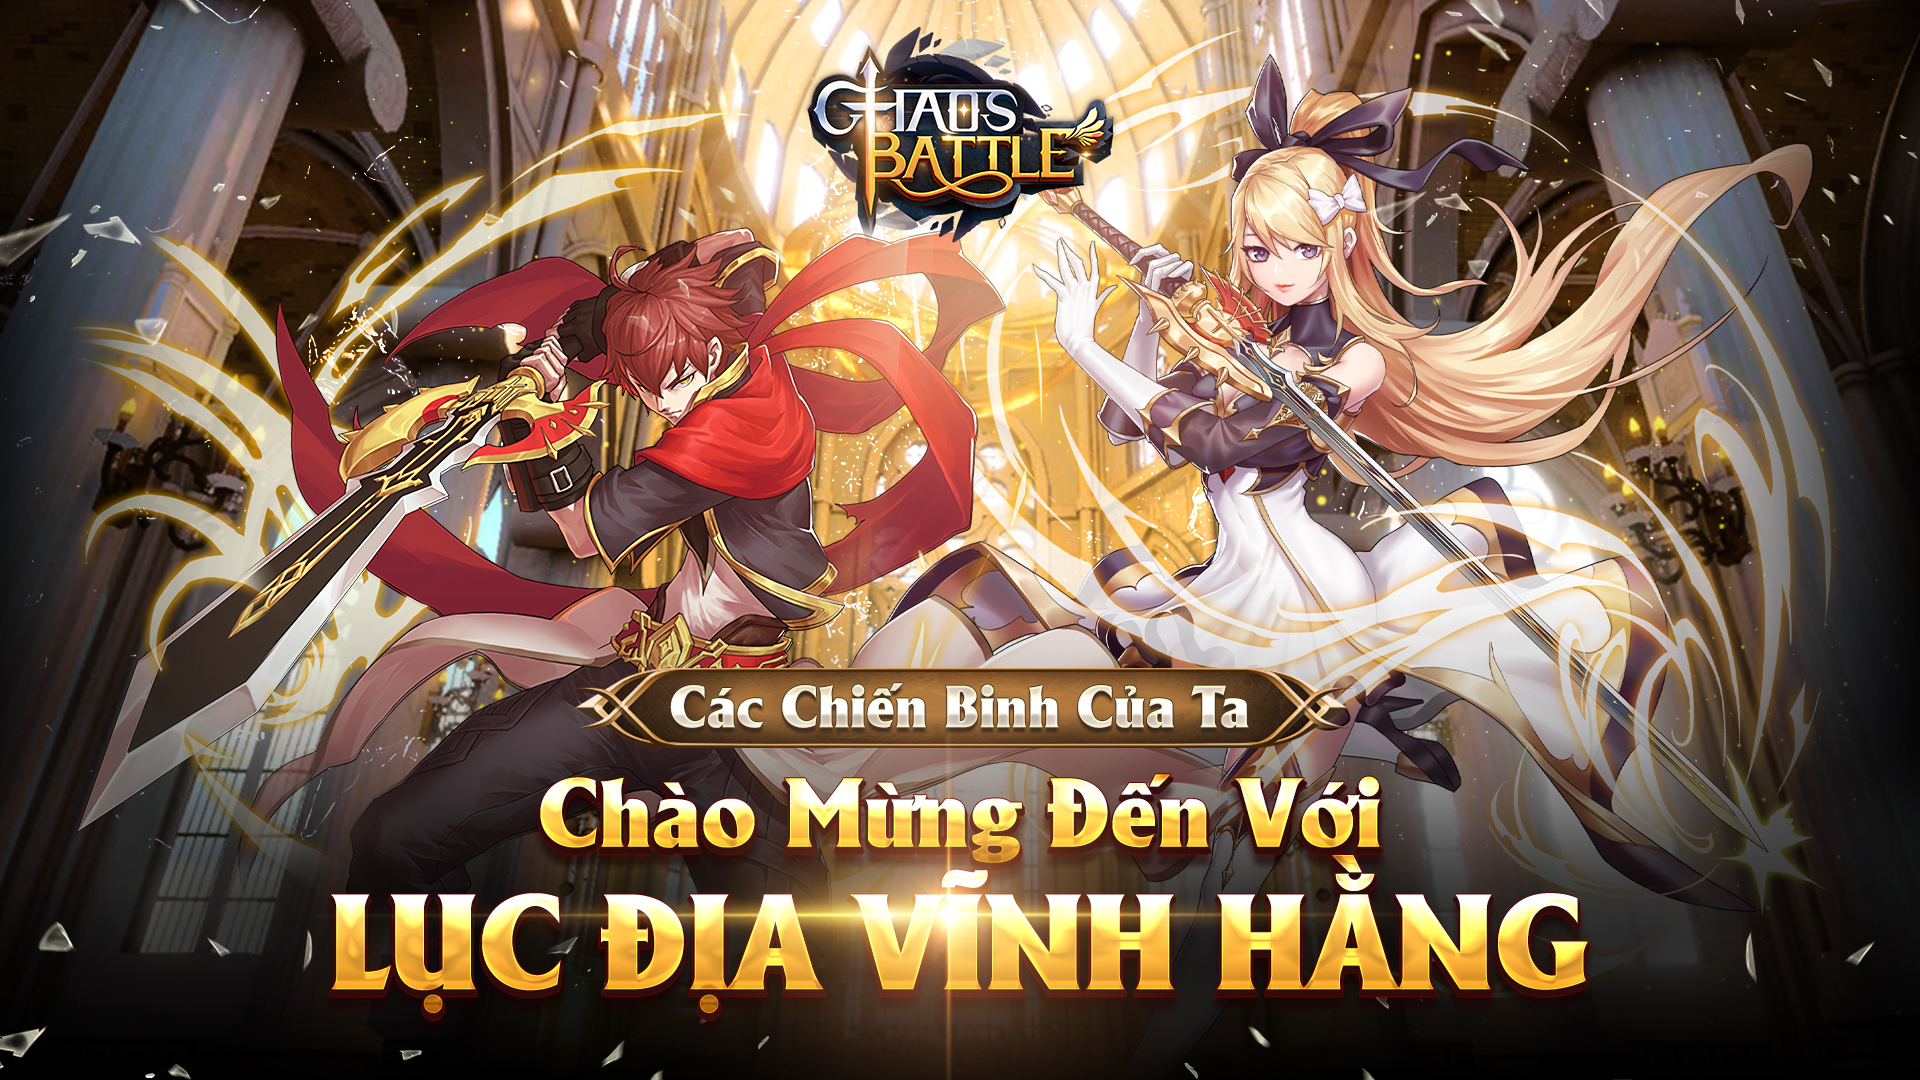 Chaos Battle Trận Chiến Vĩnh Hằng sẽ được Funtap phát hành tại Việt Nam vào 10/03